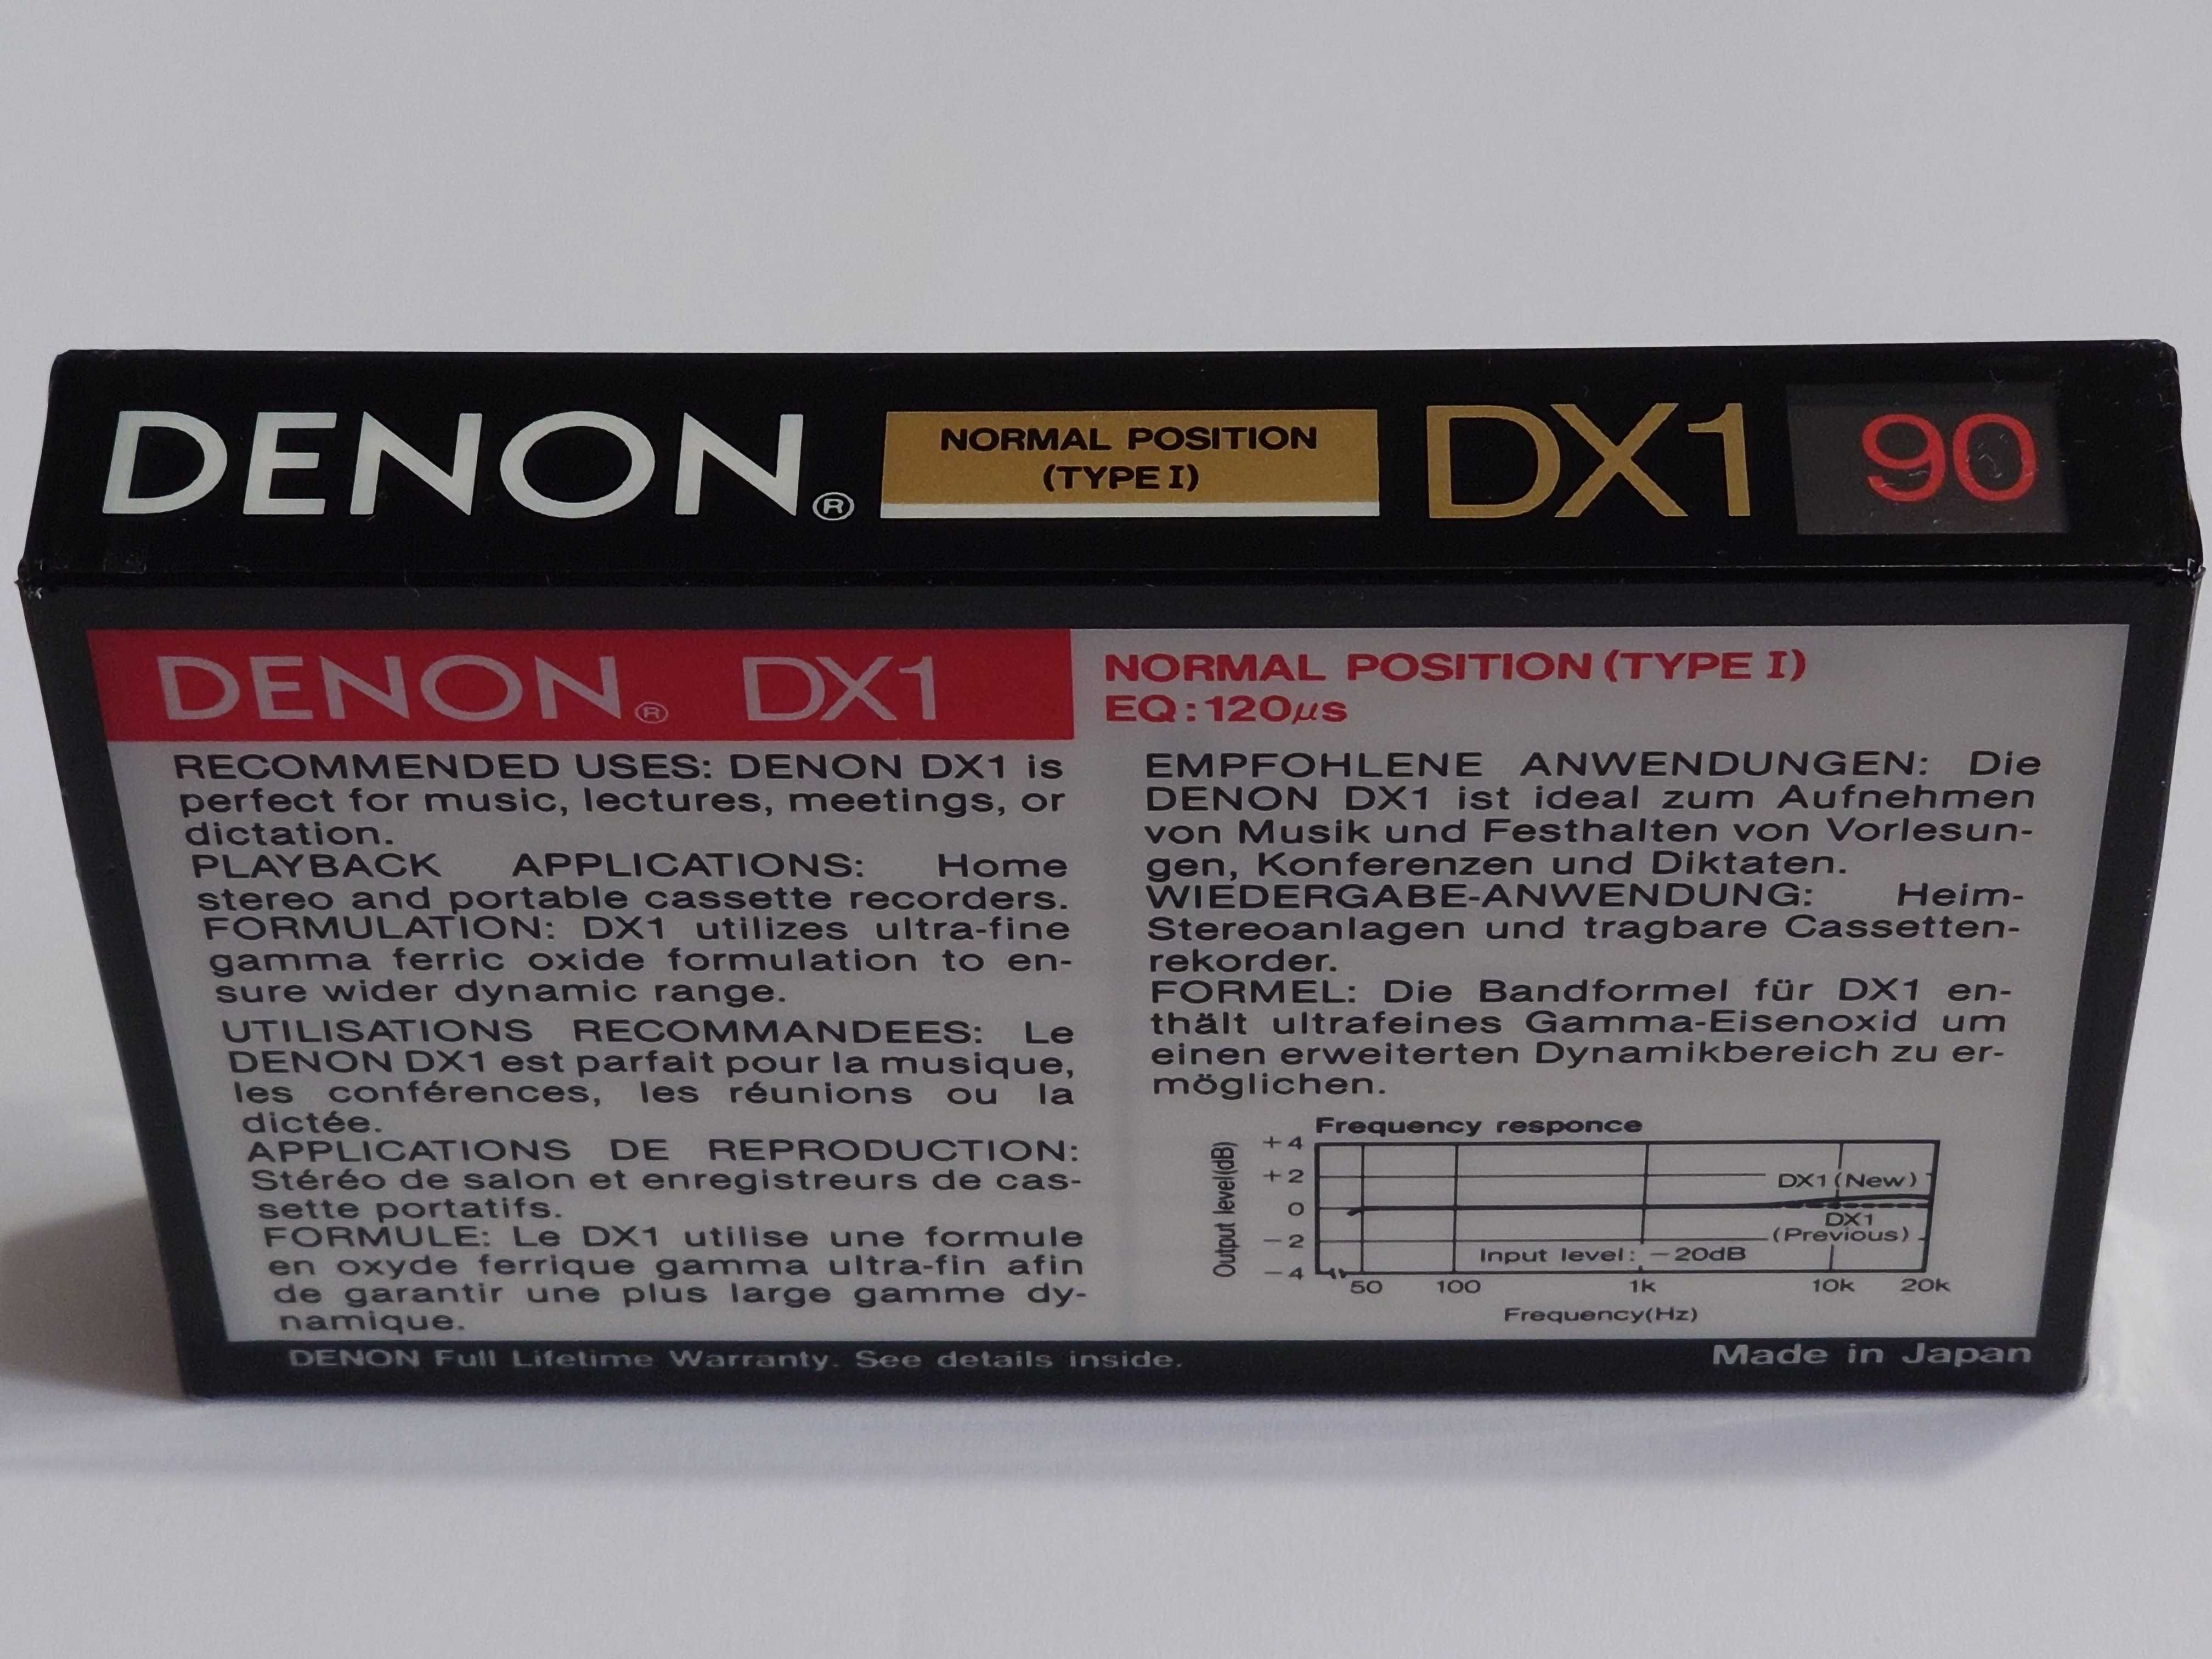 Denon DX1 90 model na lata 1990/91 - rynek Amerykański